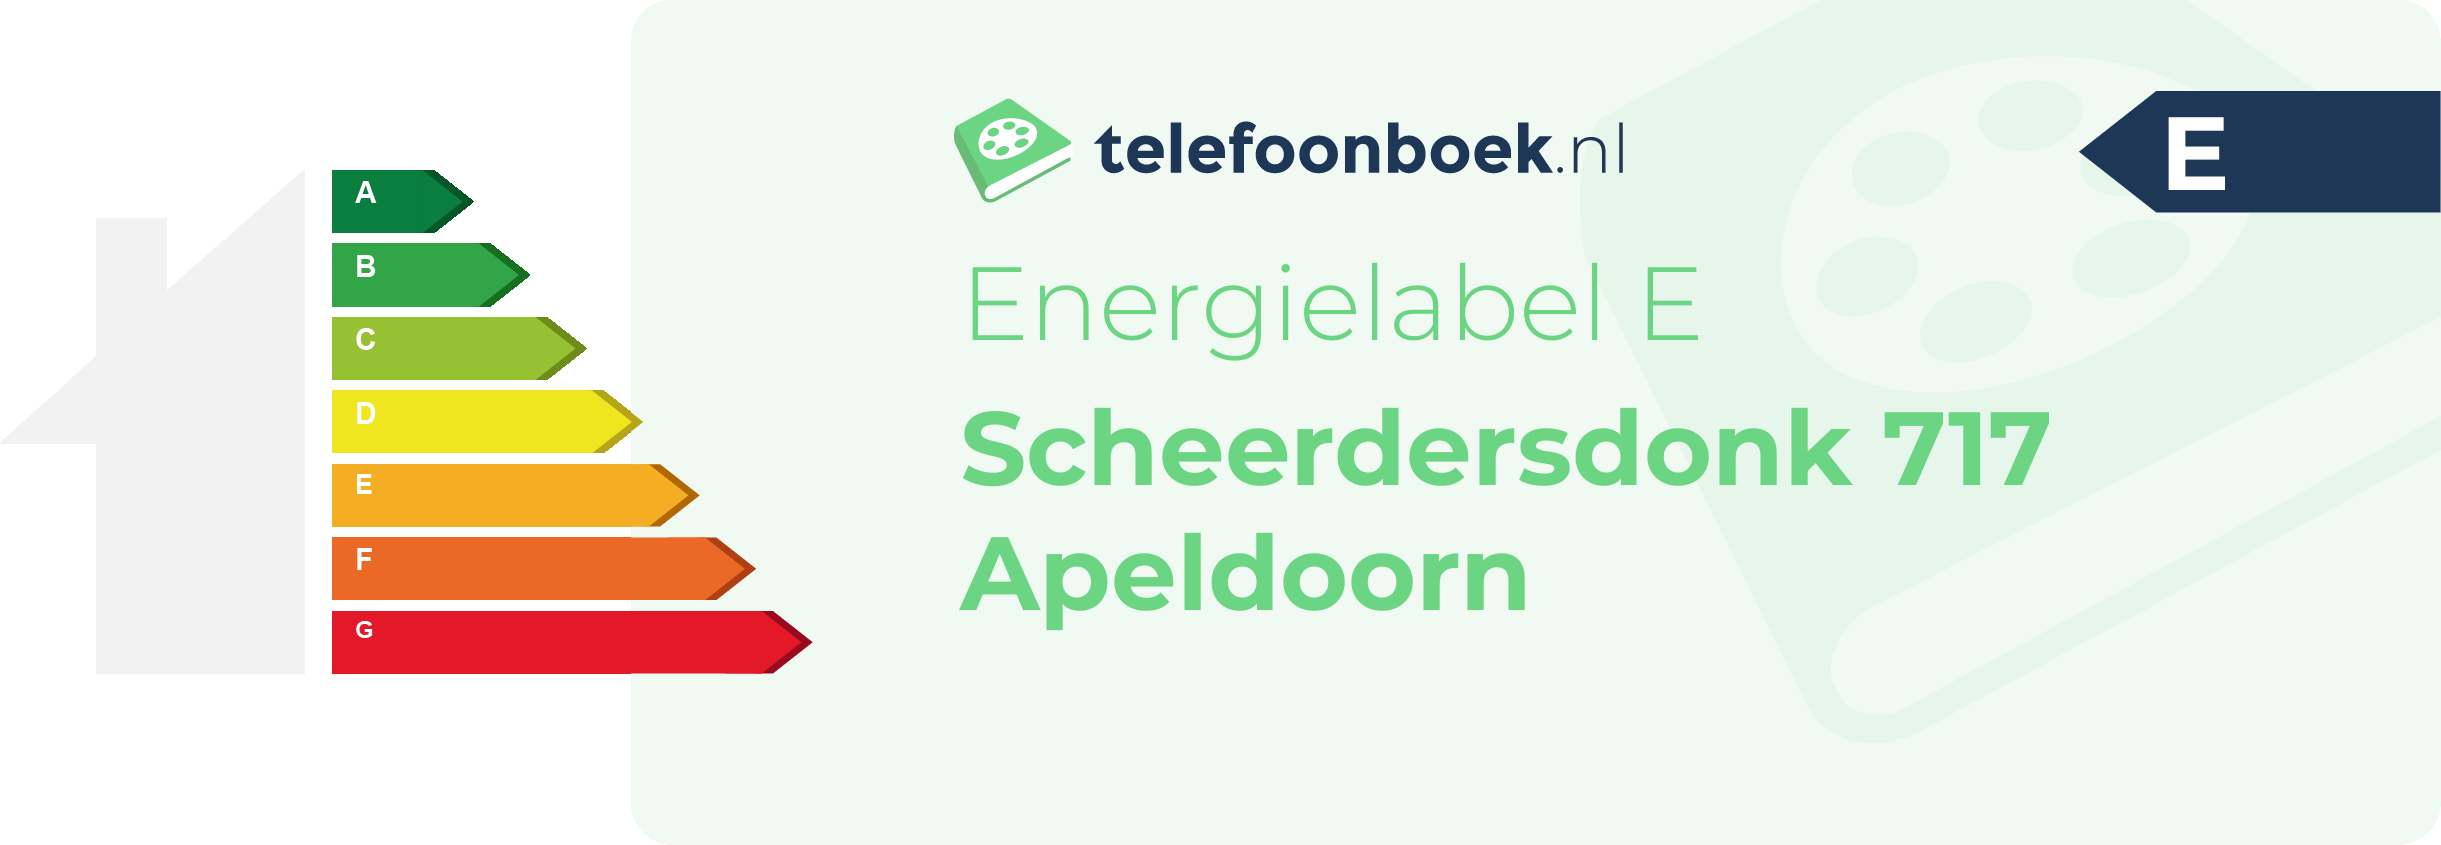 Energielabel Scheerdersdonk 717 Apeldoorn